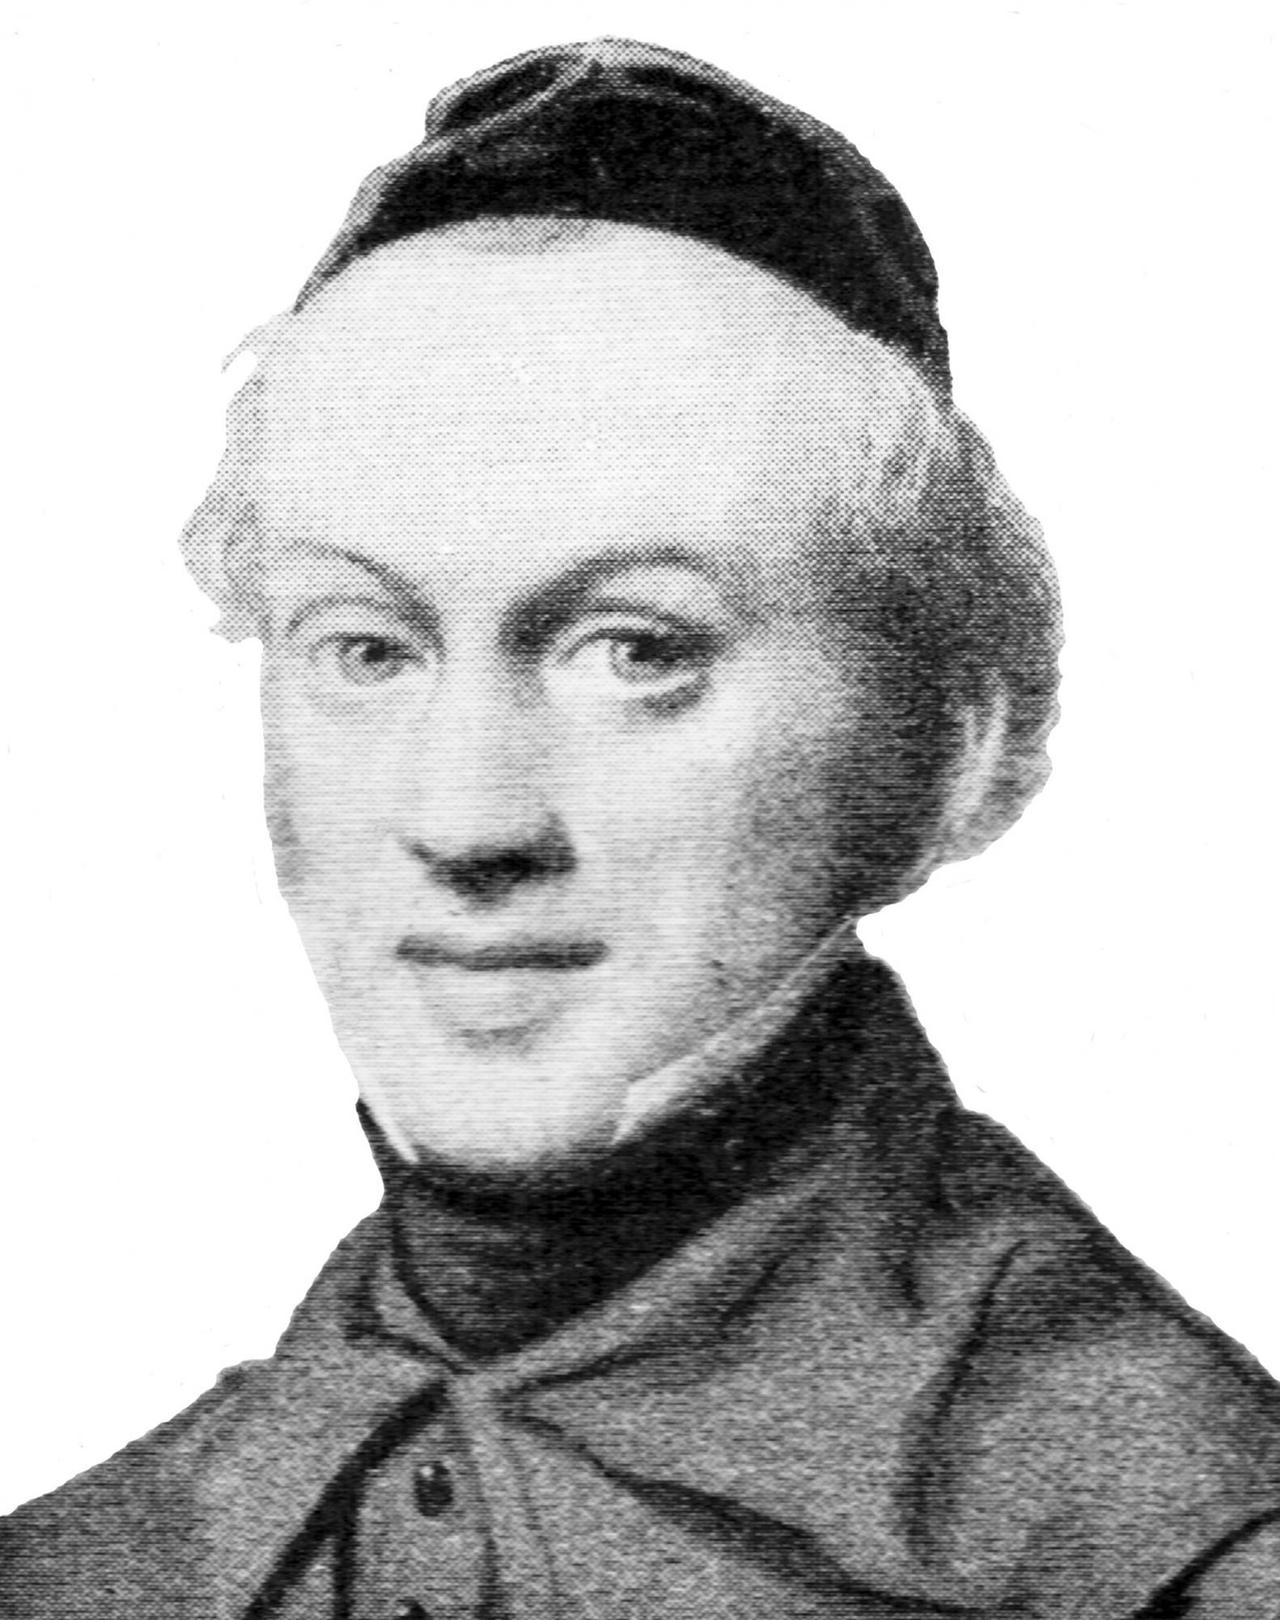 Zacharias Frankel, der Namensgeber des heutigen Kollegs, gründete 1854 das Jüdisch-Theologische Seminar in Breslau. Er gilt als Vordenker des Mittelweges zwischen Orthodoxie und Reformbewegung, auch wenn dieser Mittelweg damals noch nicht Masorti hieß.